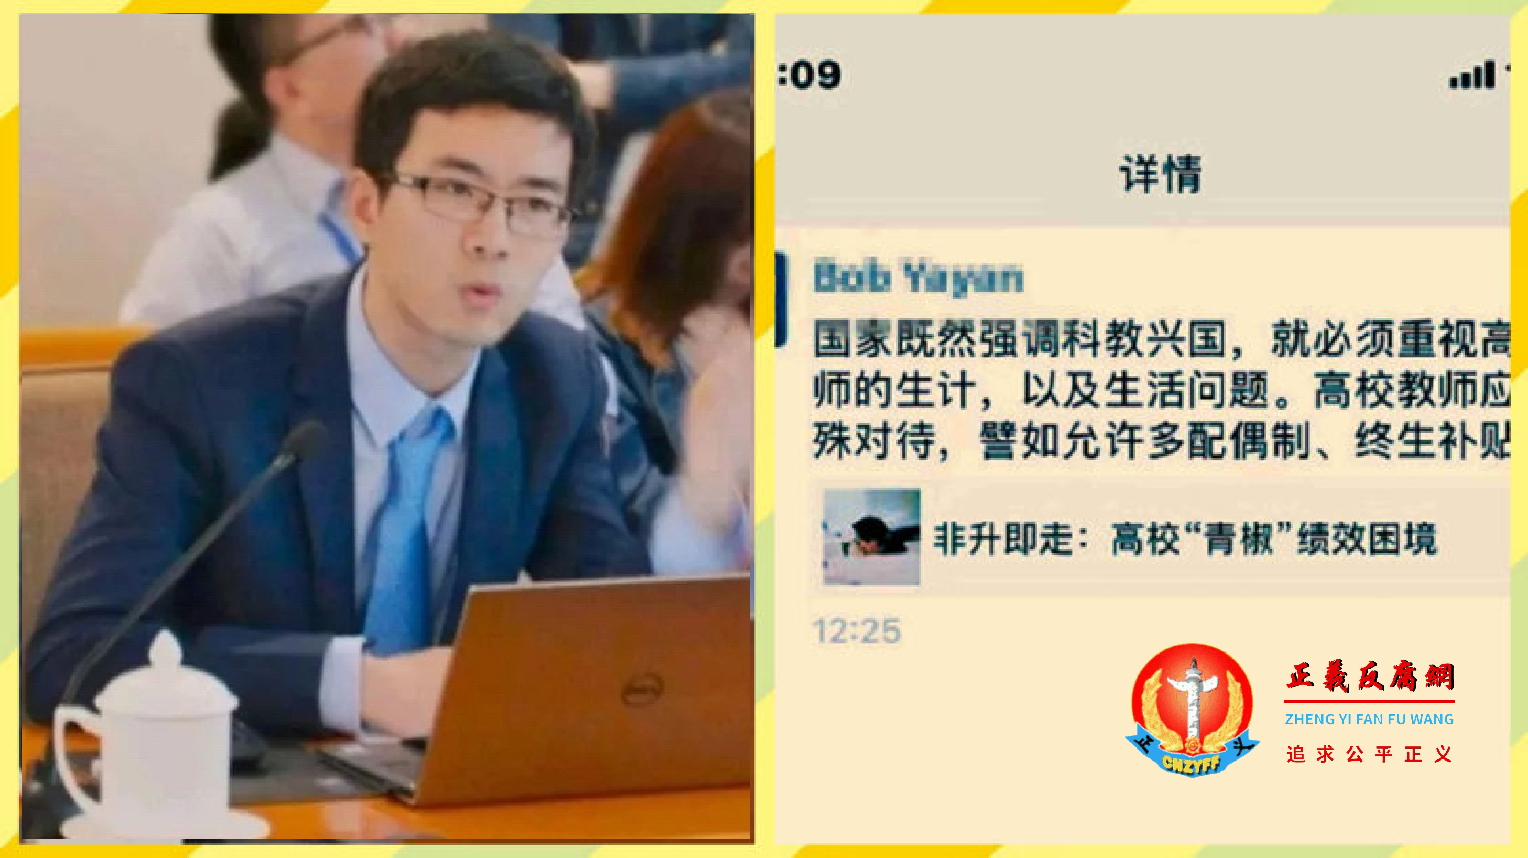 华东政法大学法学院副研究员包毅楠称，高校教师应获优待“允许多配偶制”等，引发争议。.png